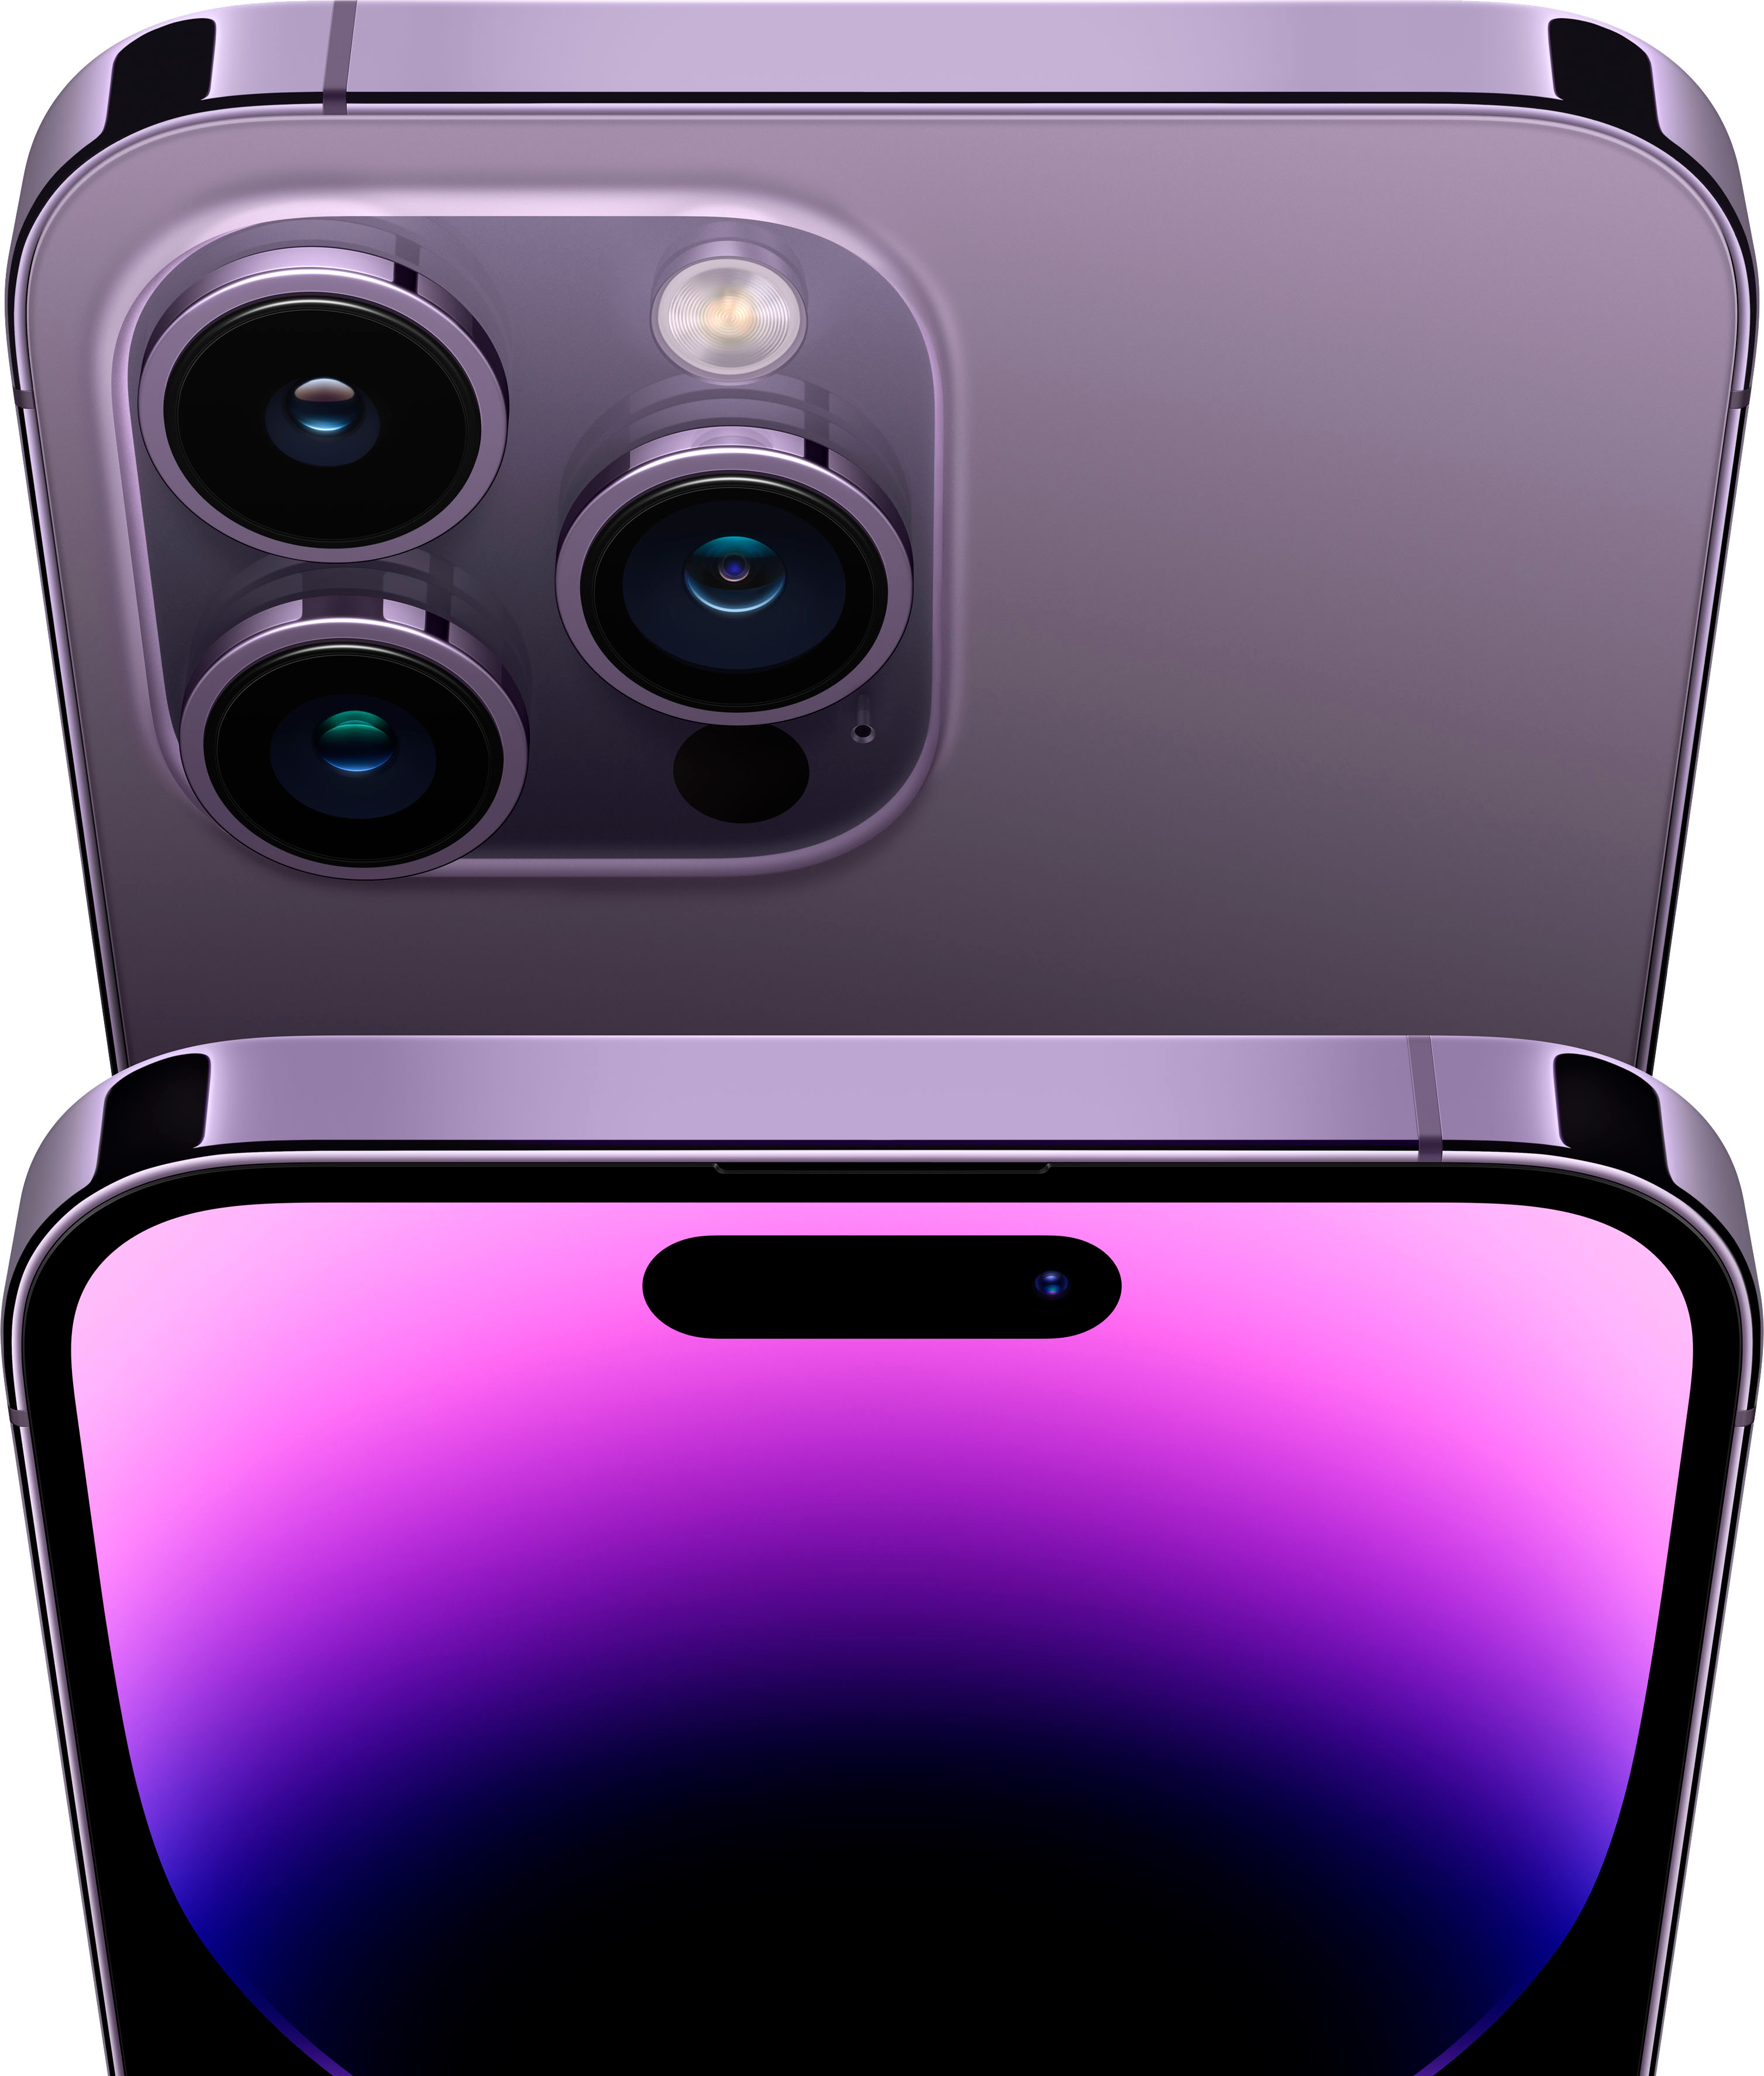 Apple iPhone 14 Pro Max 512GB Deep Purple (Verizon) MQ913LL/A 